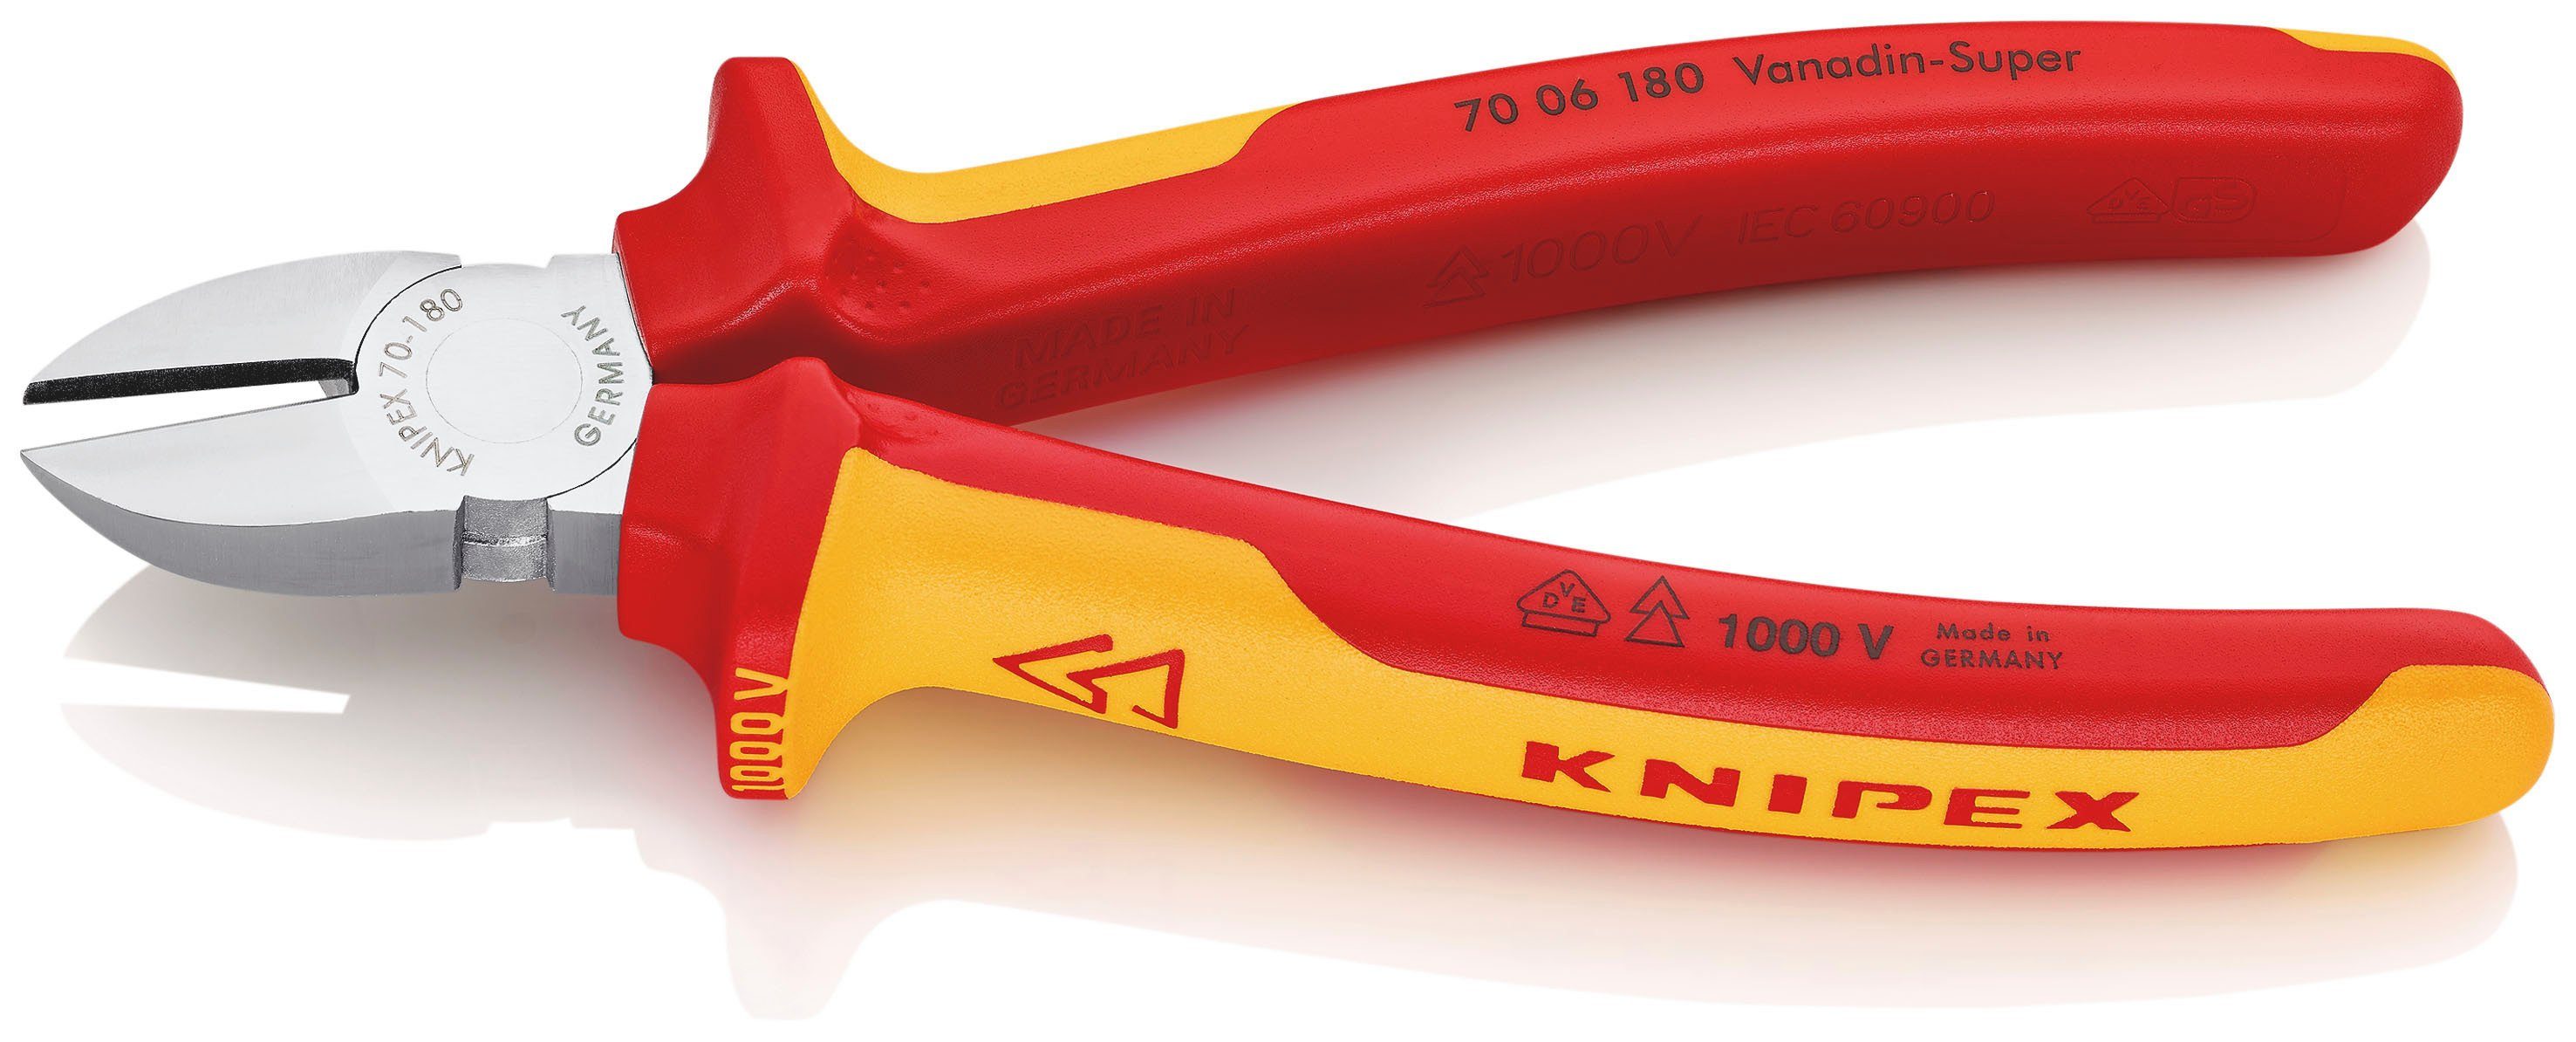 Knipex Seitenschneider 70 06 180, 1-tlg., verchromt, isoliert mit Mehrkomponenten-Hüllen, VDE-geprüft 180 mm | Zangen